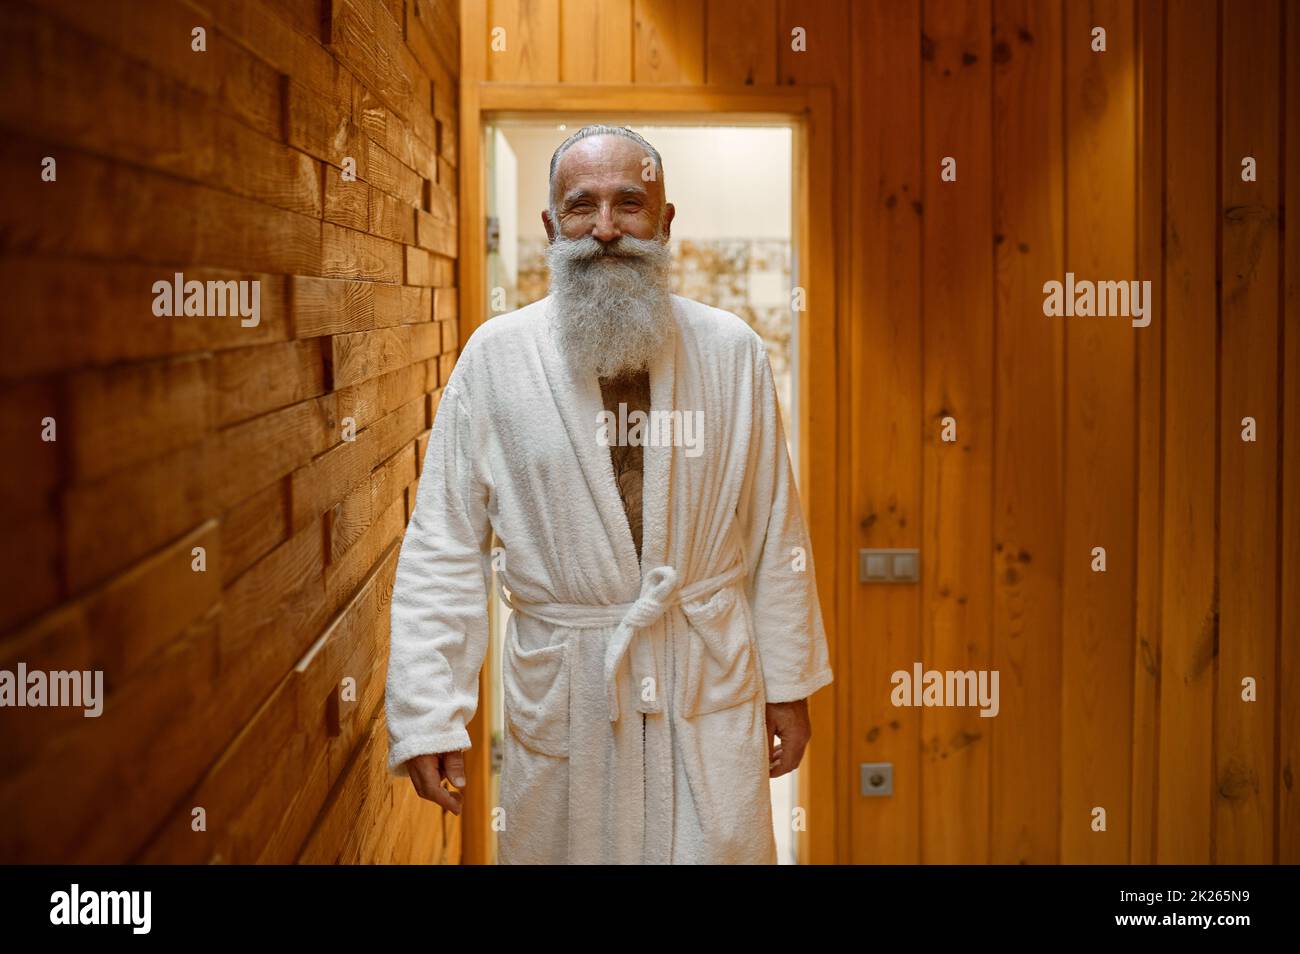 Sauna man hi-res stock photography and images - Alamy